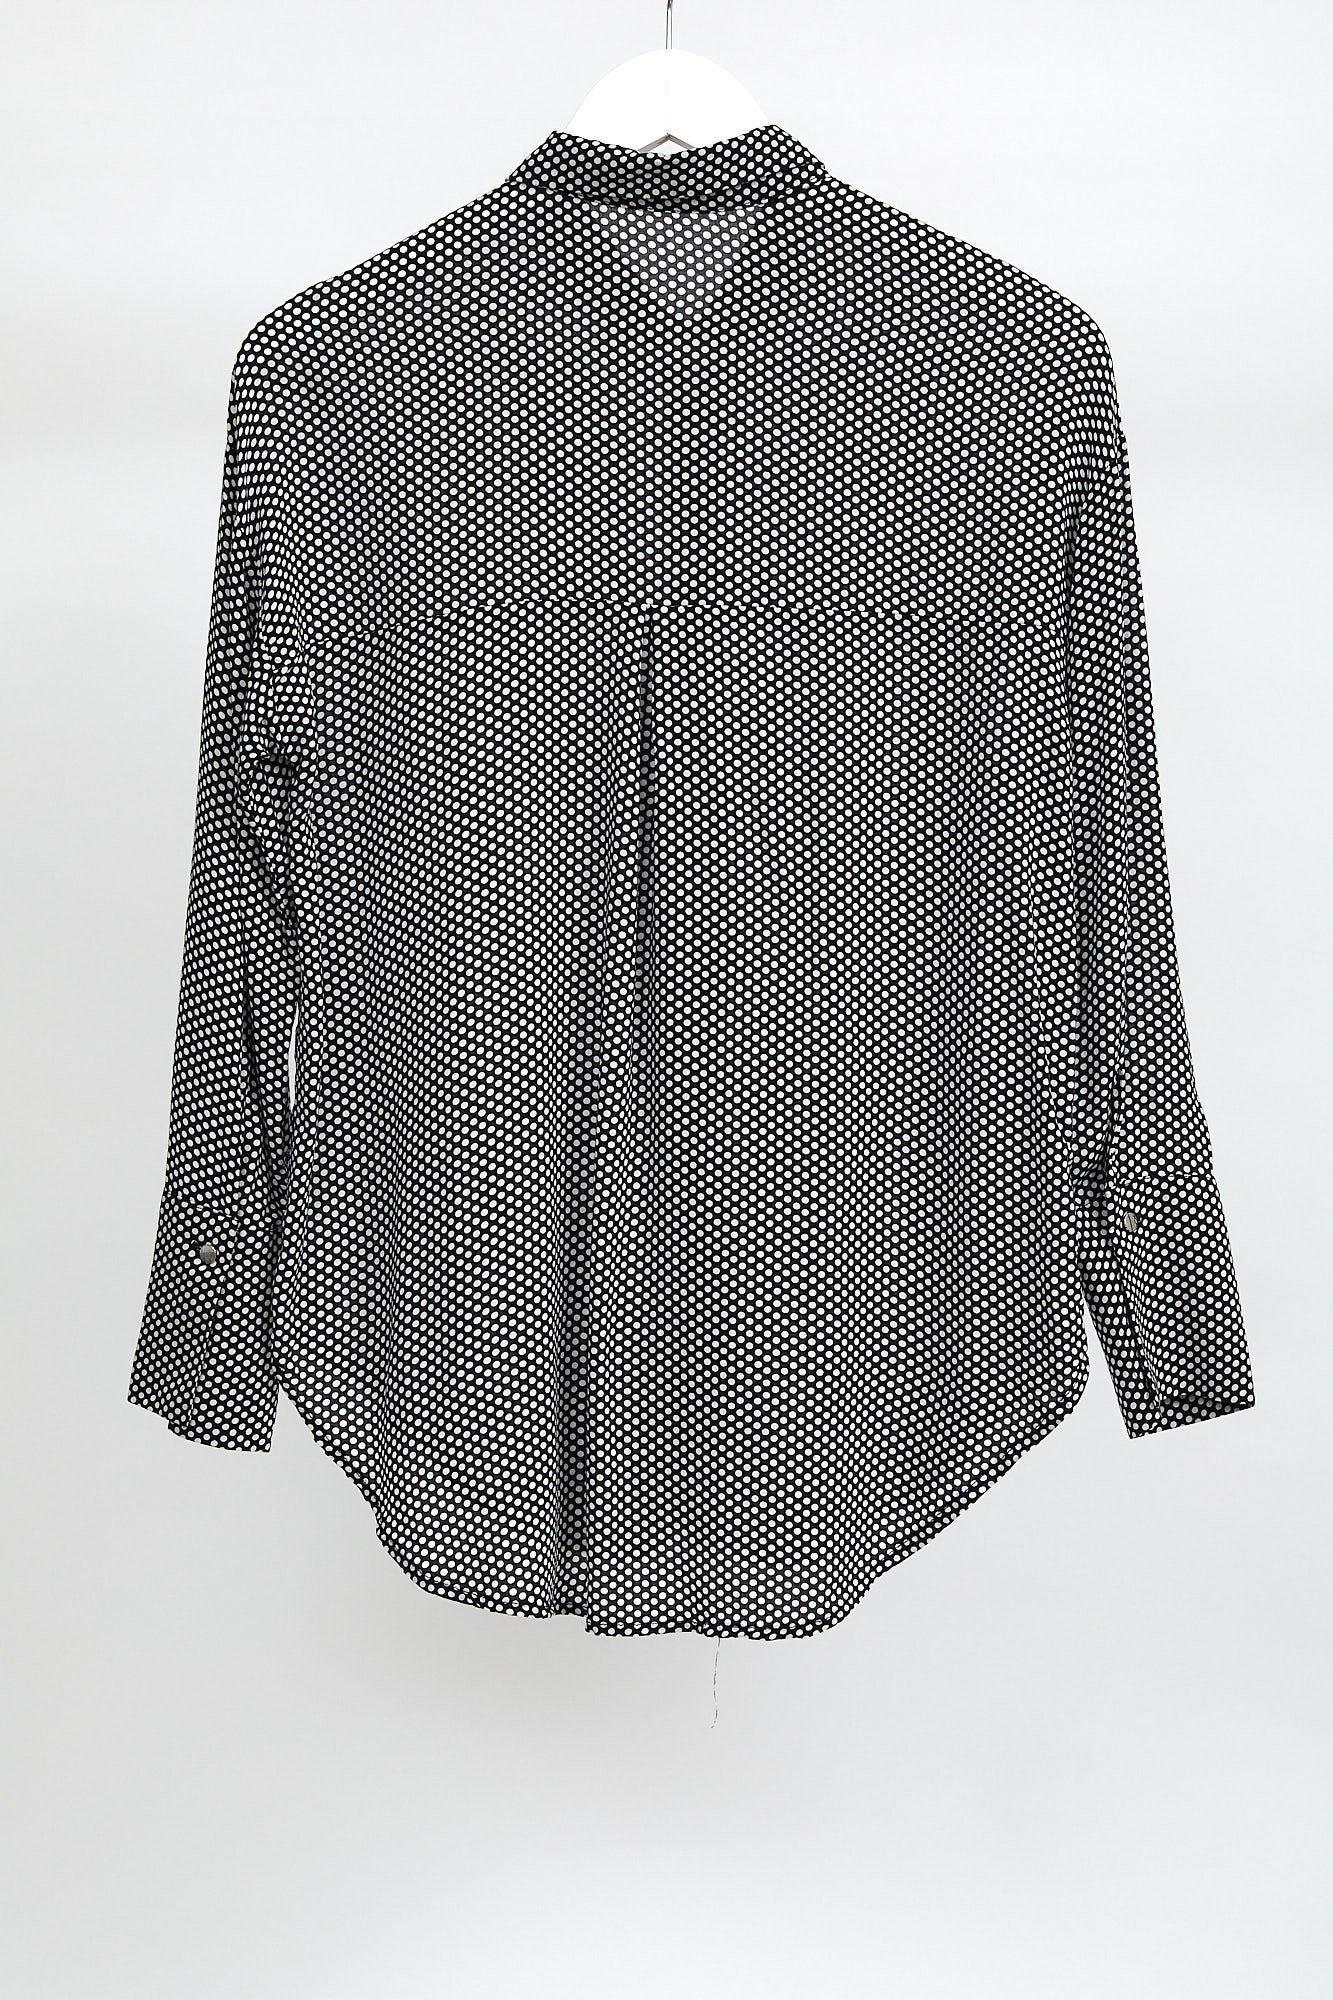 Womens Black Spot Pattern Shirt: Size Small